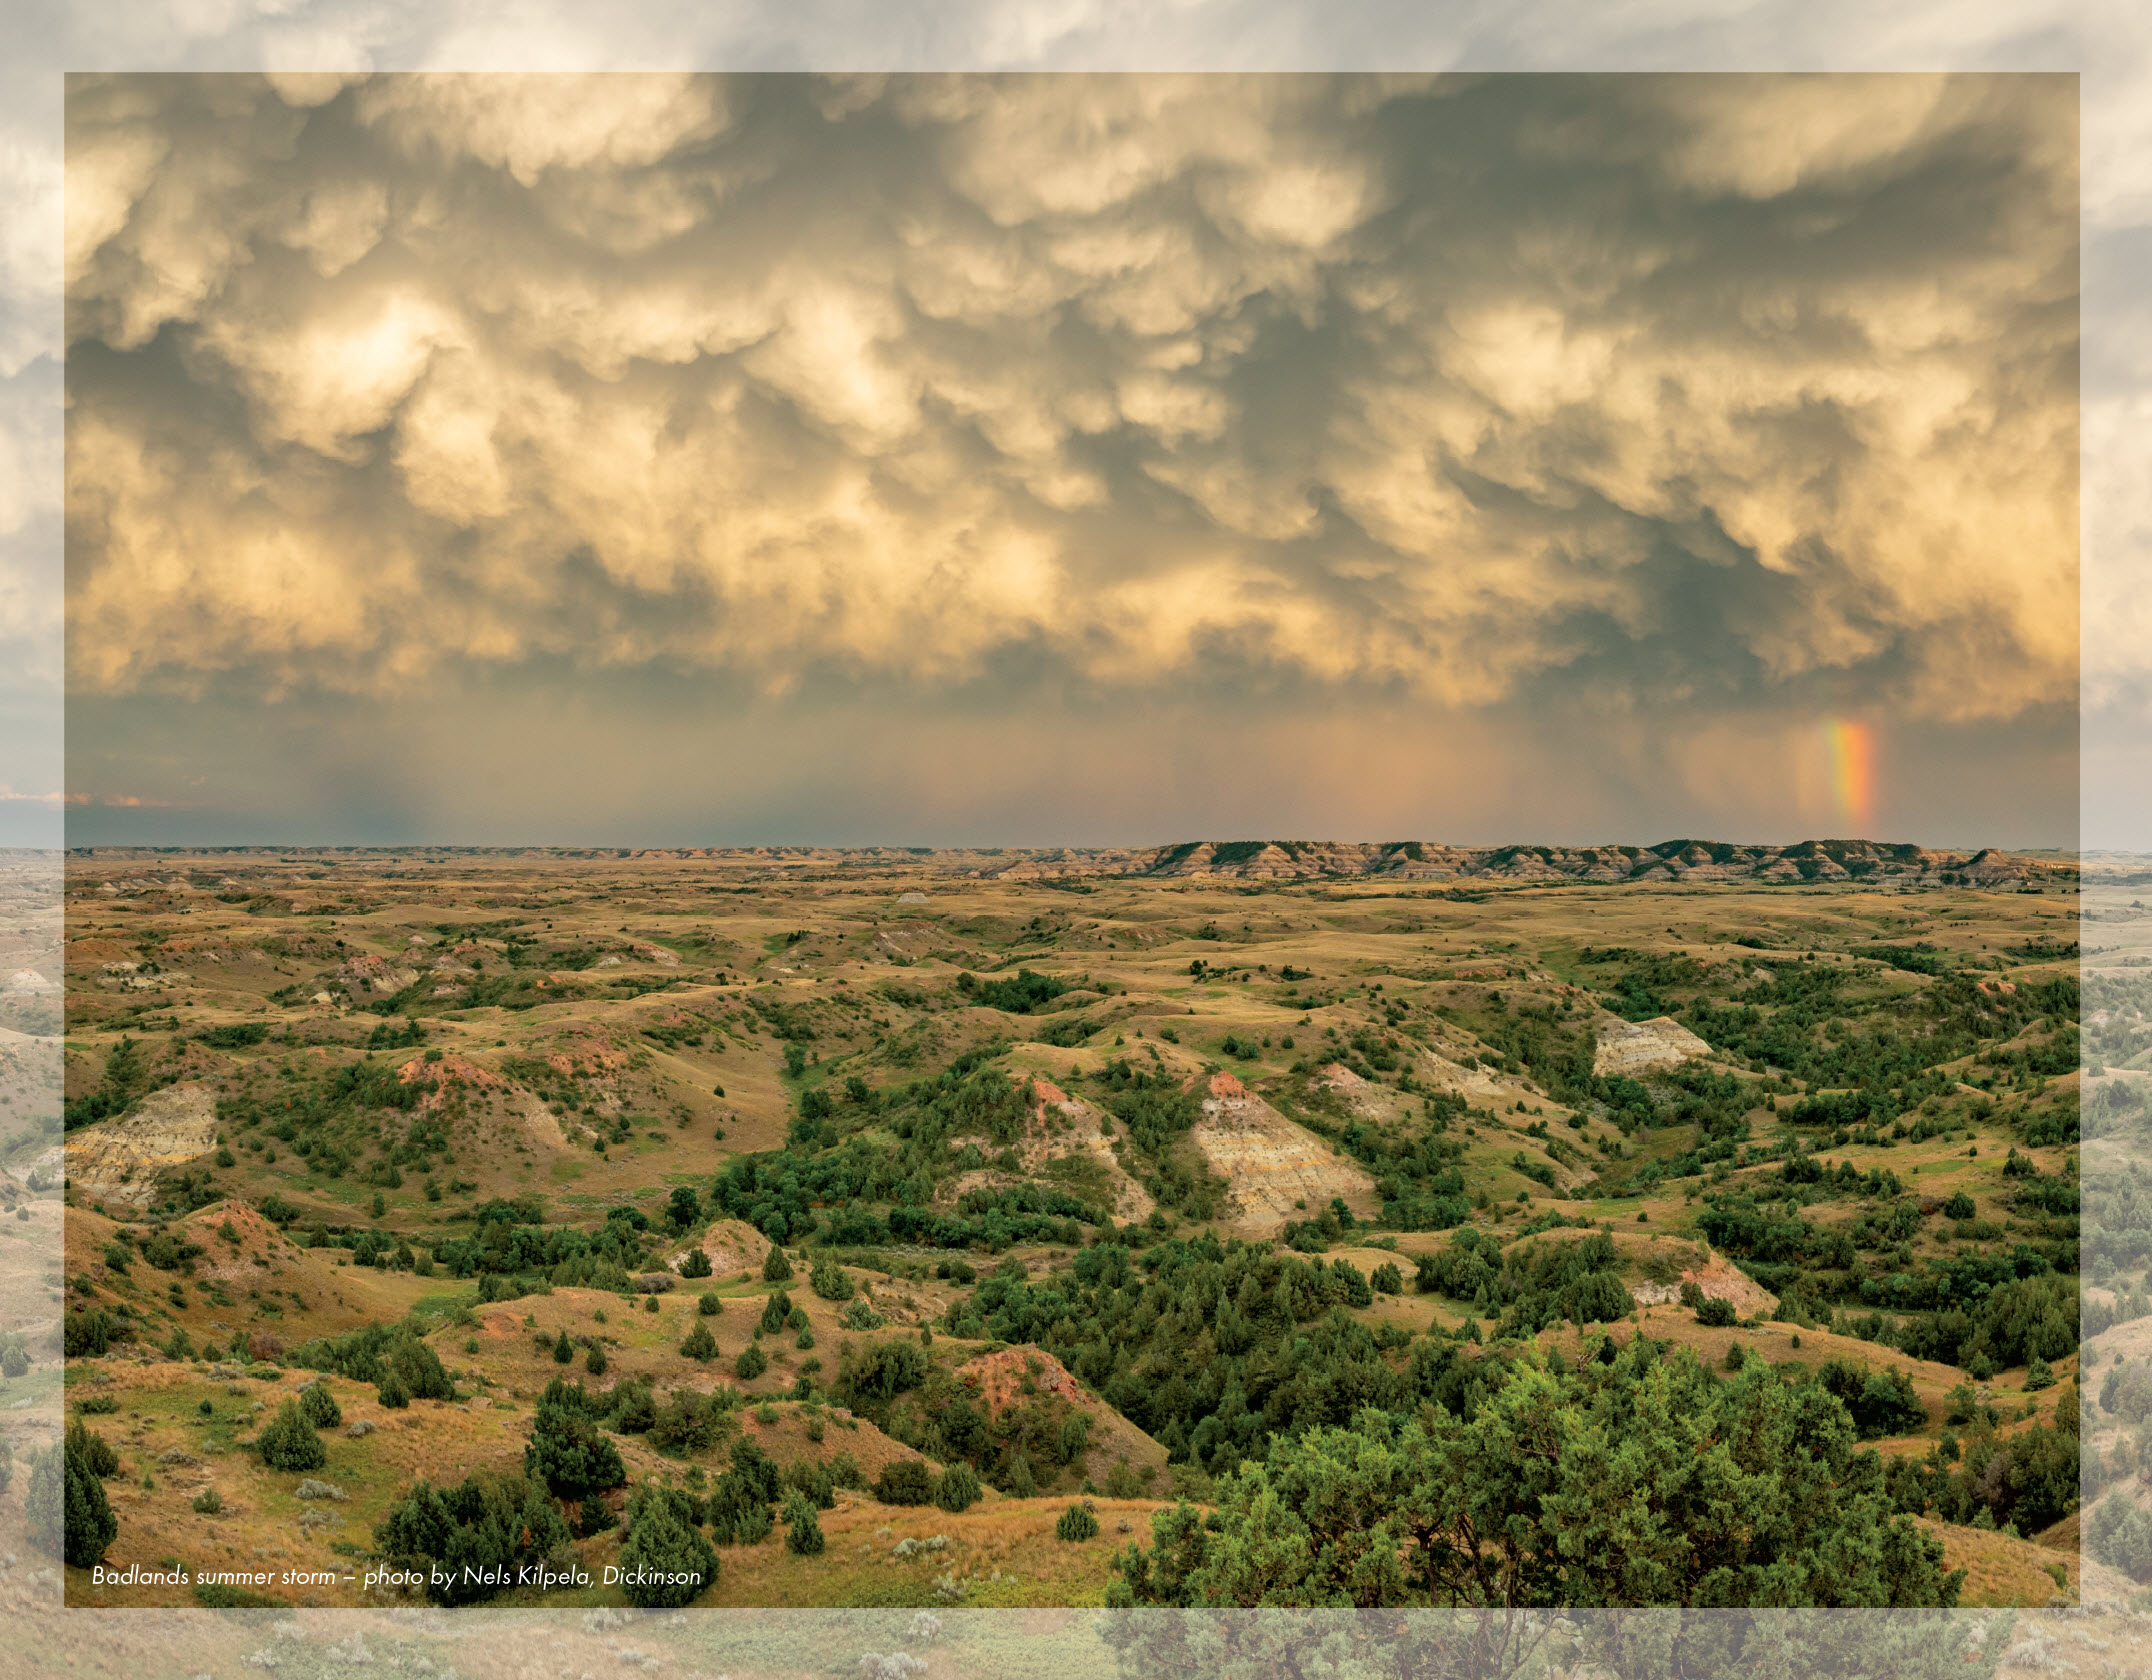 Badlands summer storm taken by Nels Kilpela